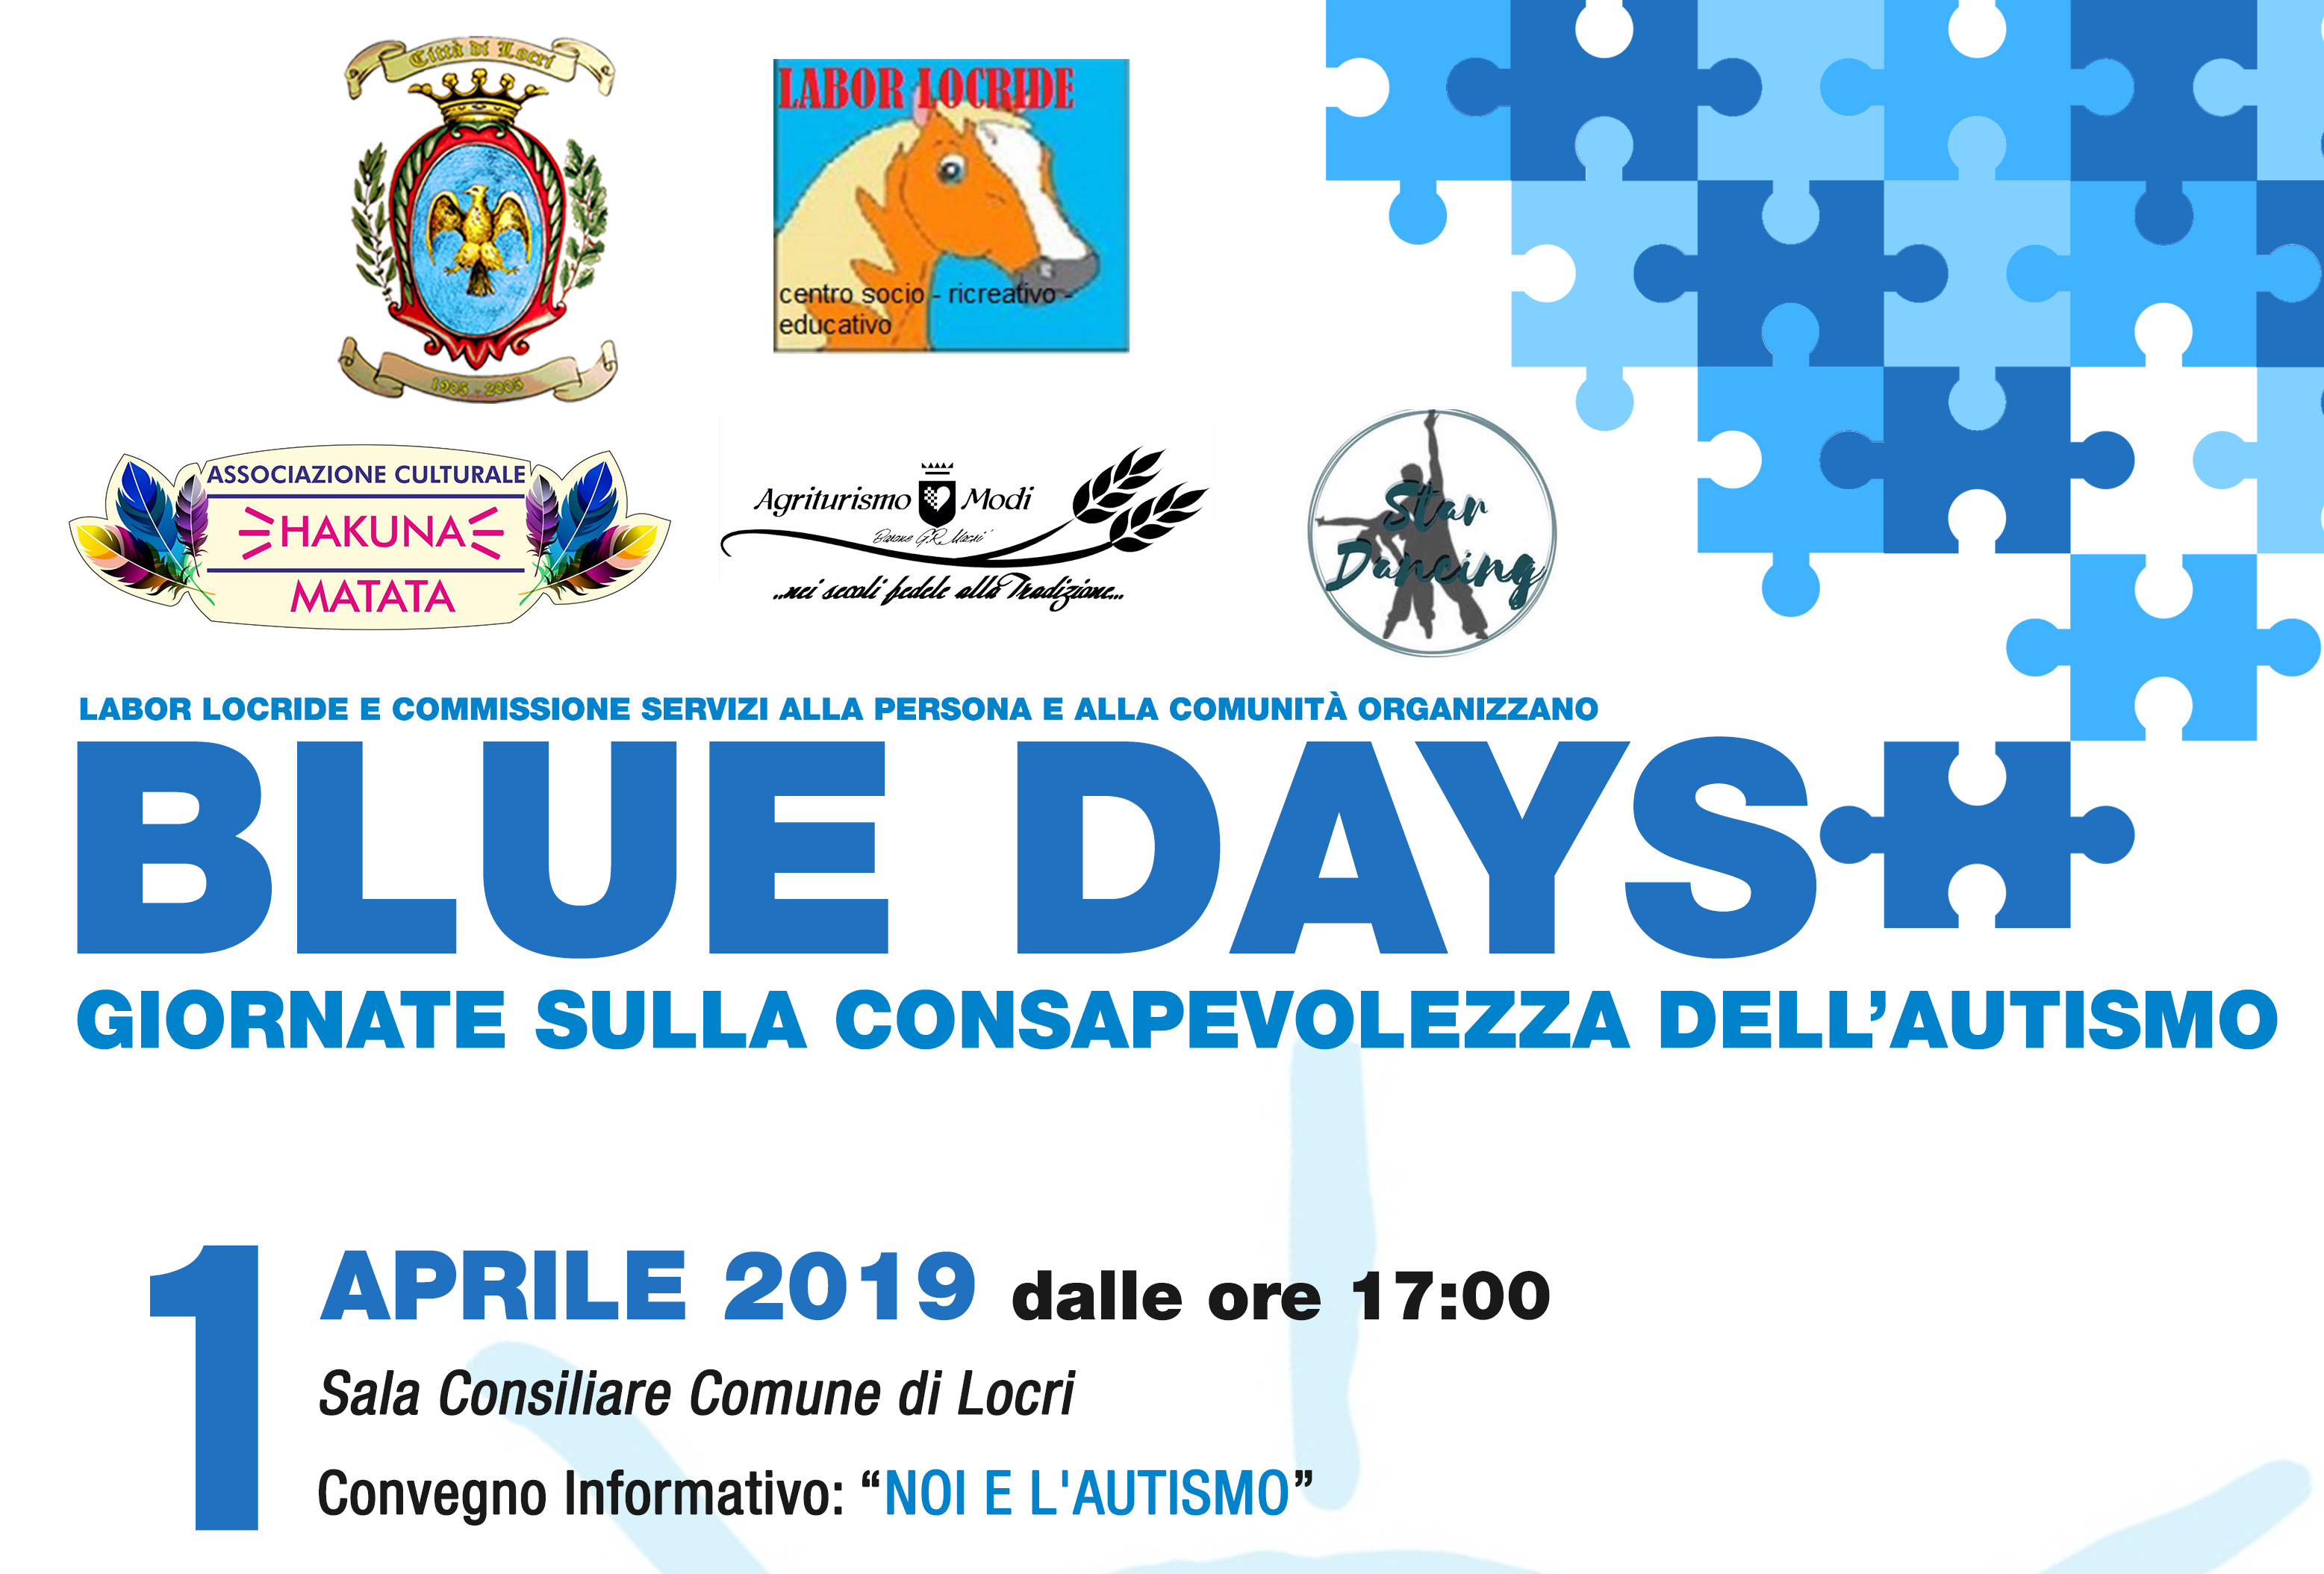 Giornata Mondiale per la consapevolezza sull’Autismo: le iniziative a Locri